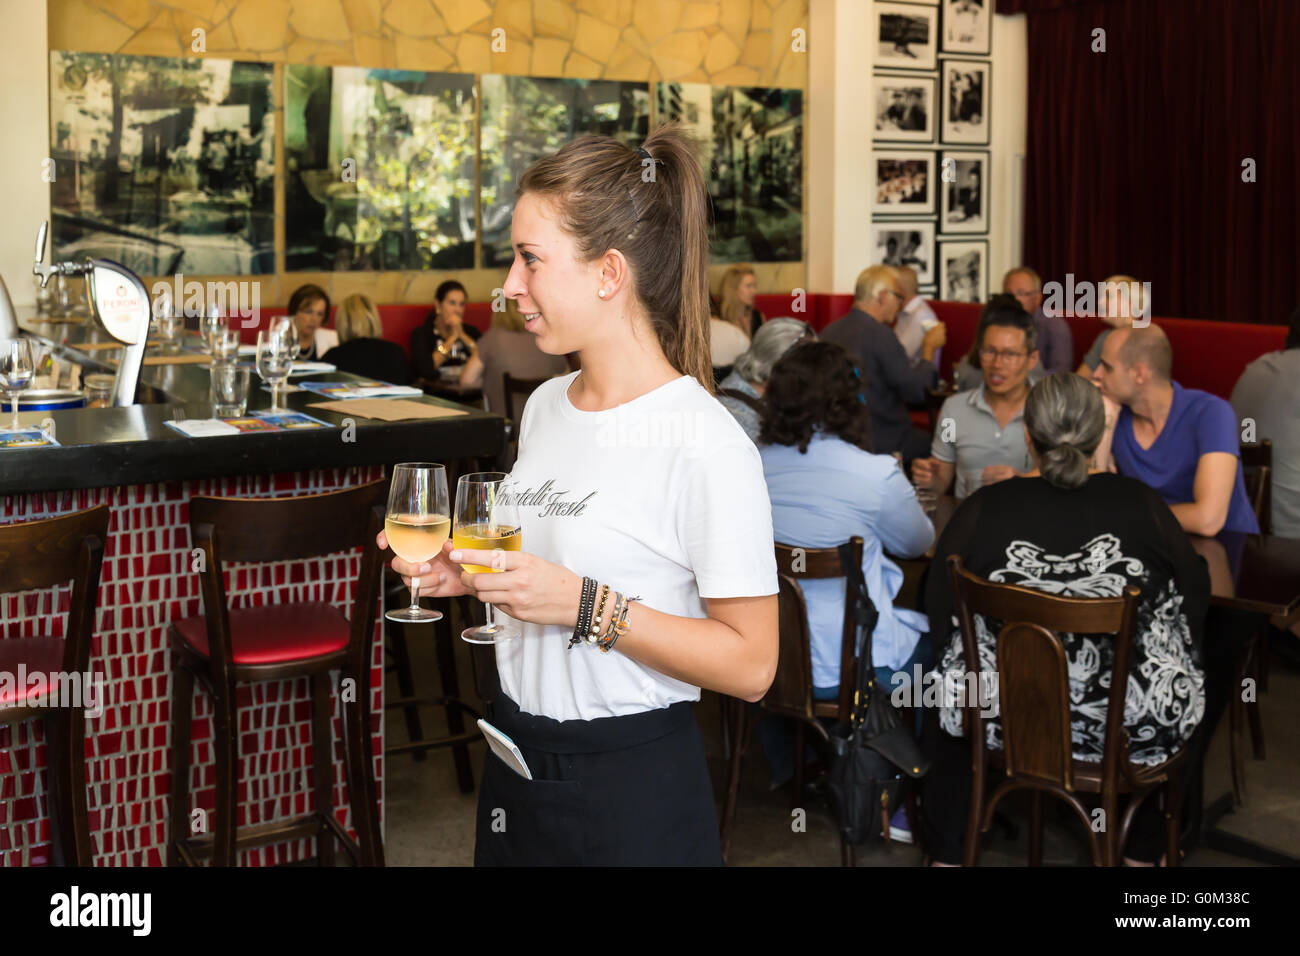 Fotografías de interior de Fratelli fresco con la camarera tomar bebidas a una tabla, Potts Point, Sydney, NSW, Australia. Foto de stock